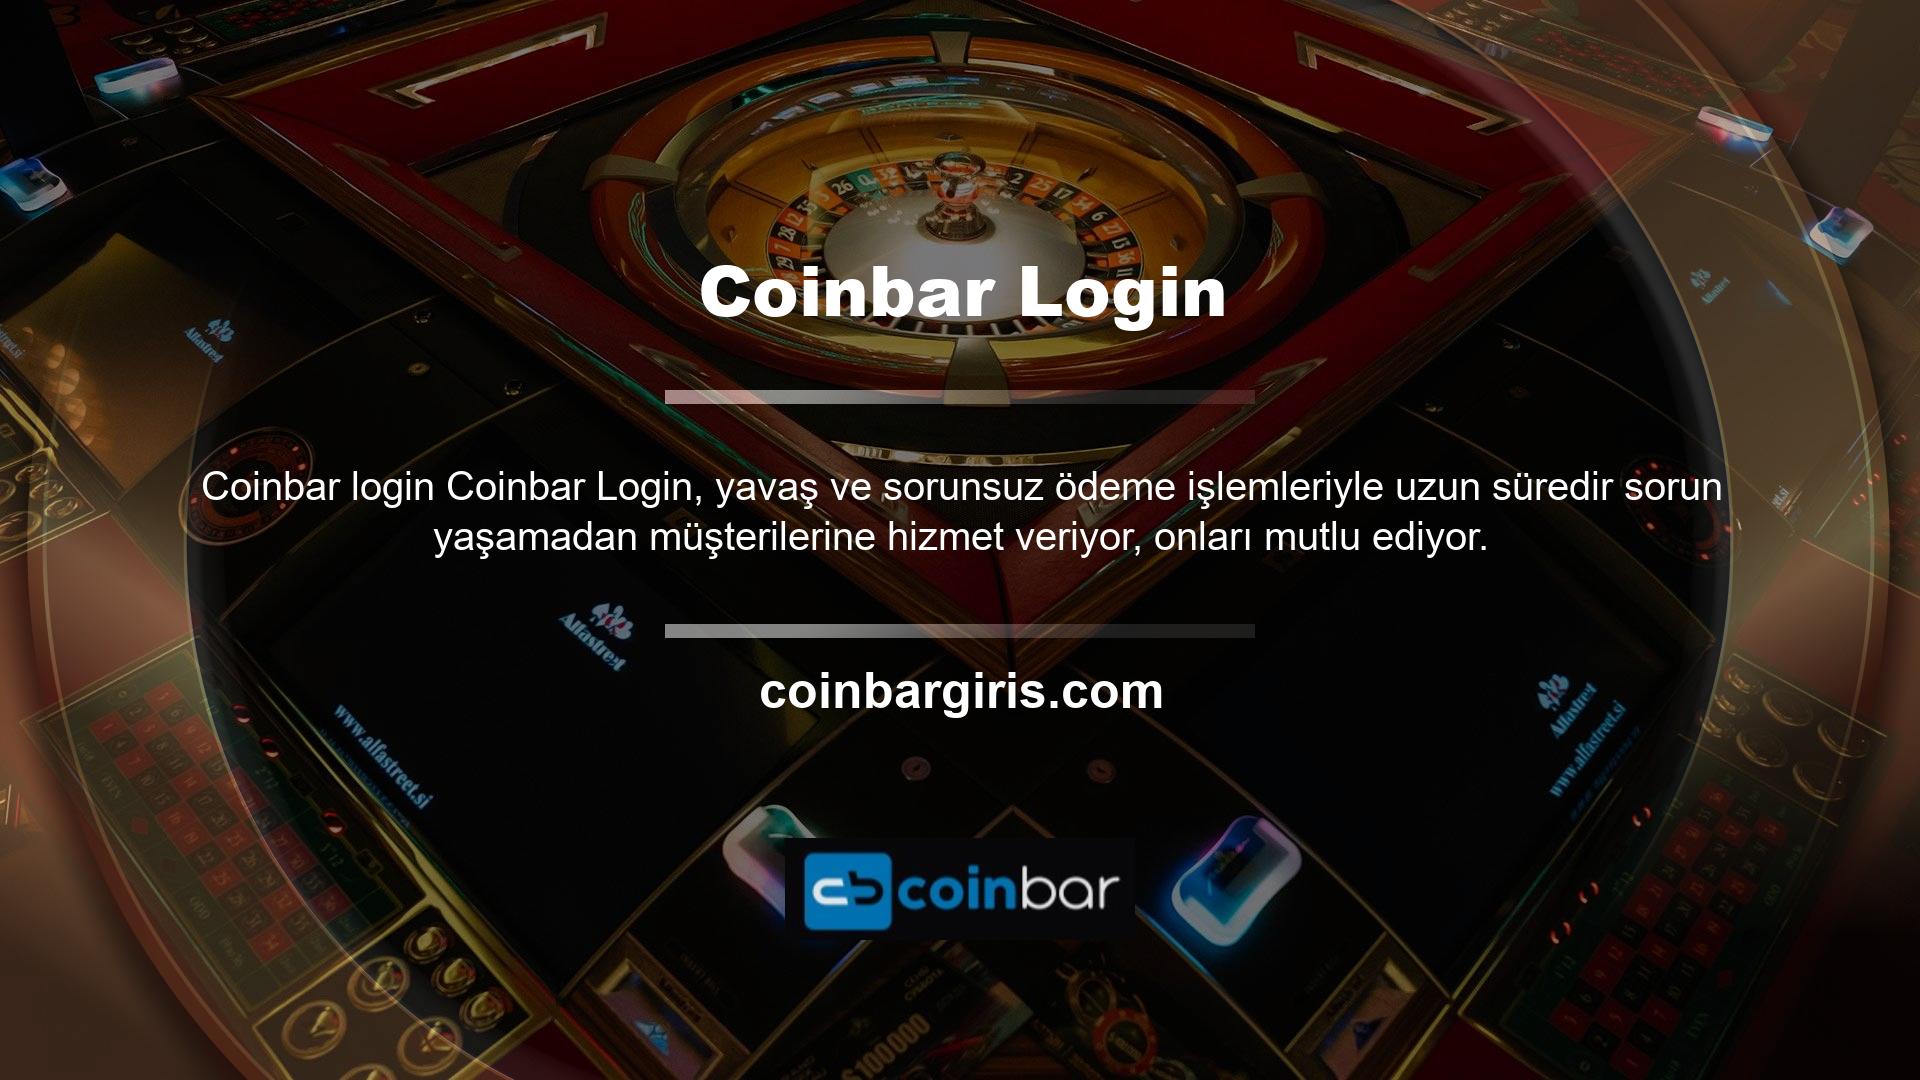 Coinbar sitesi, tüm işlemleri zahmetsizce gerçekleştirmenize olanak tanıyan güvenli bir platformdur